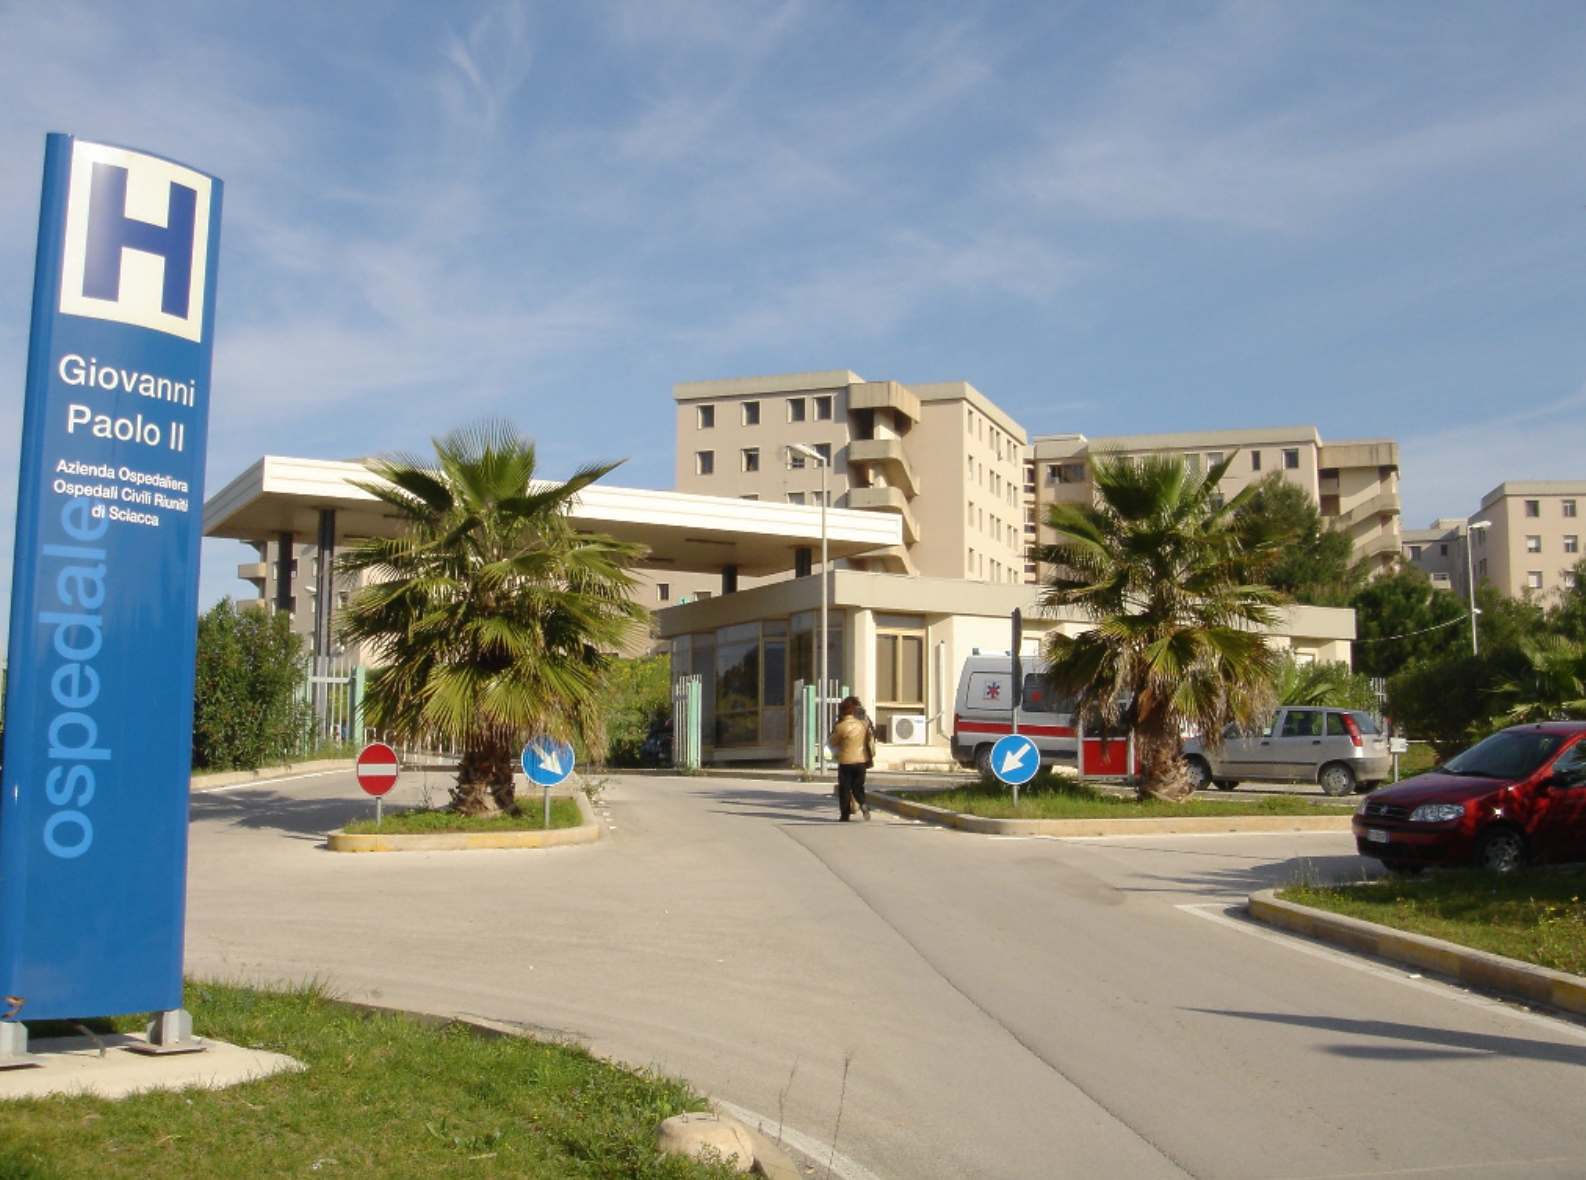 L’ospedale Giovanni Paolo II di Sciacca e il suo record di nascite 1